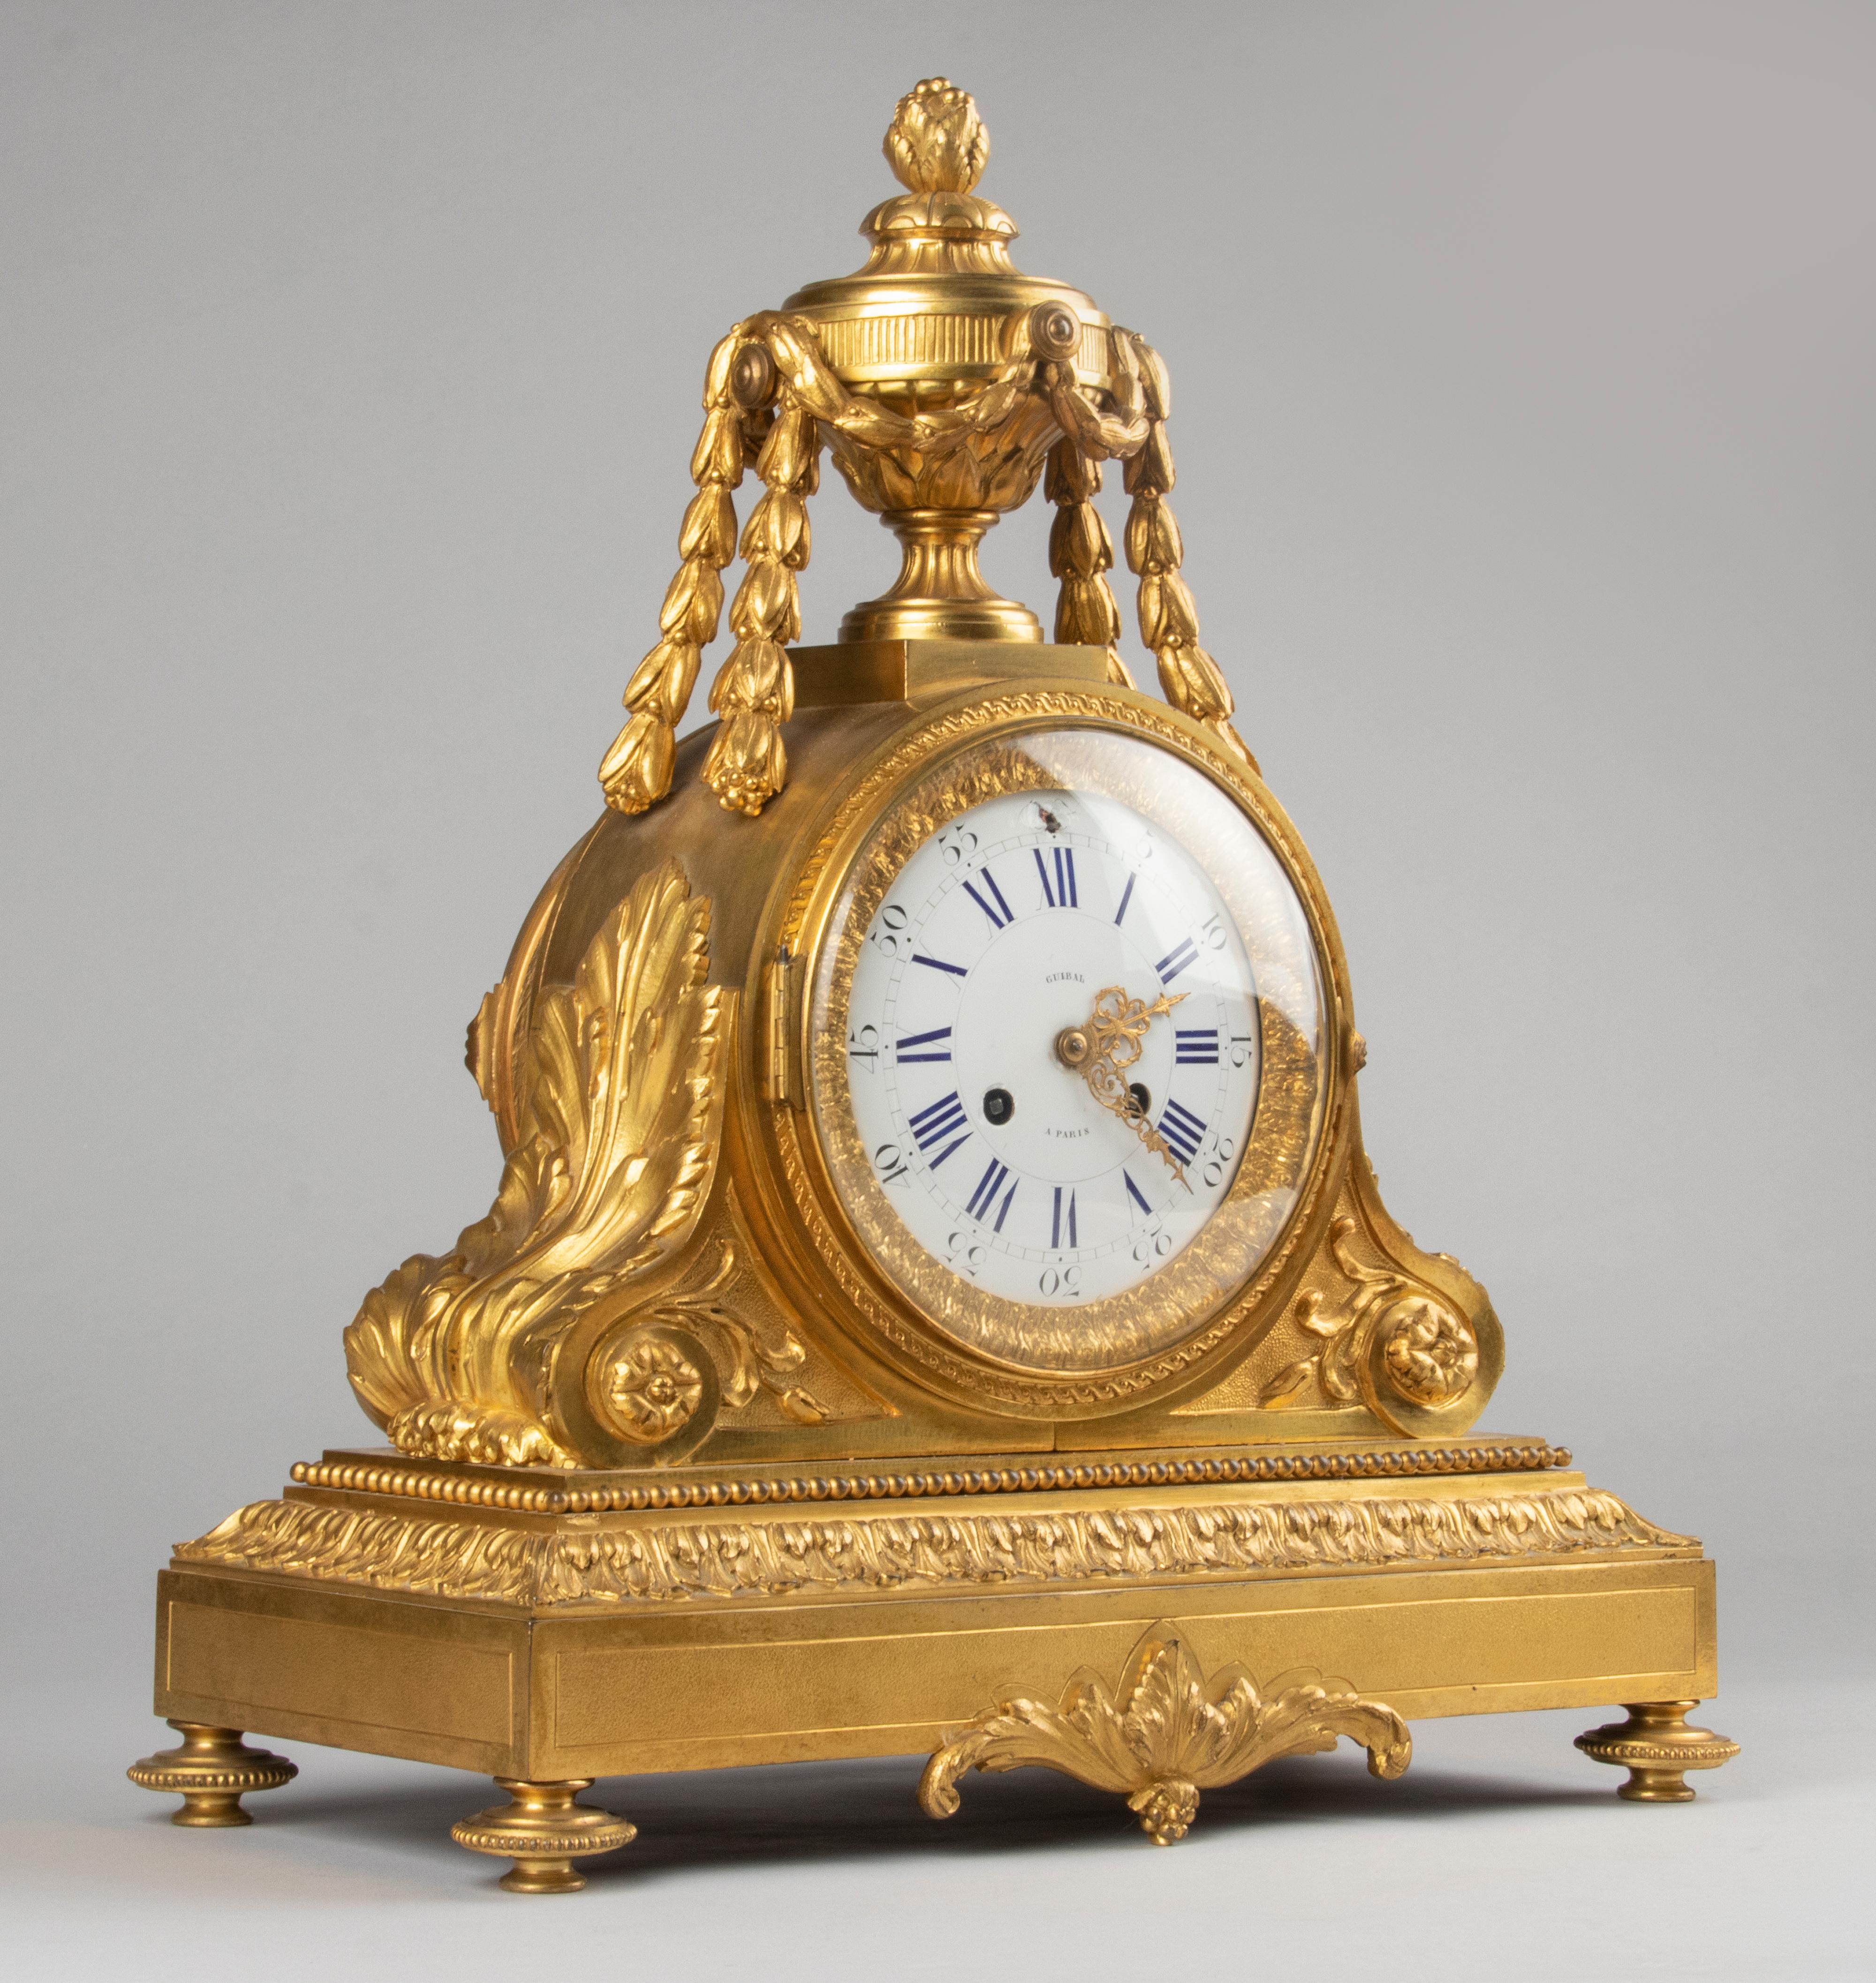 Une belle et grande horloge de cheminée française de style Louis XVI, de la fin de la période Napoléon III, 1870-1880. L'horloge est coulée en bronze et a une finition dorée au feu, le cadran est en cuivre émaillé. Richement orné tout autour